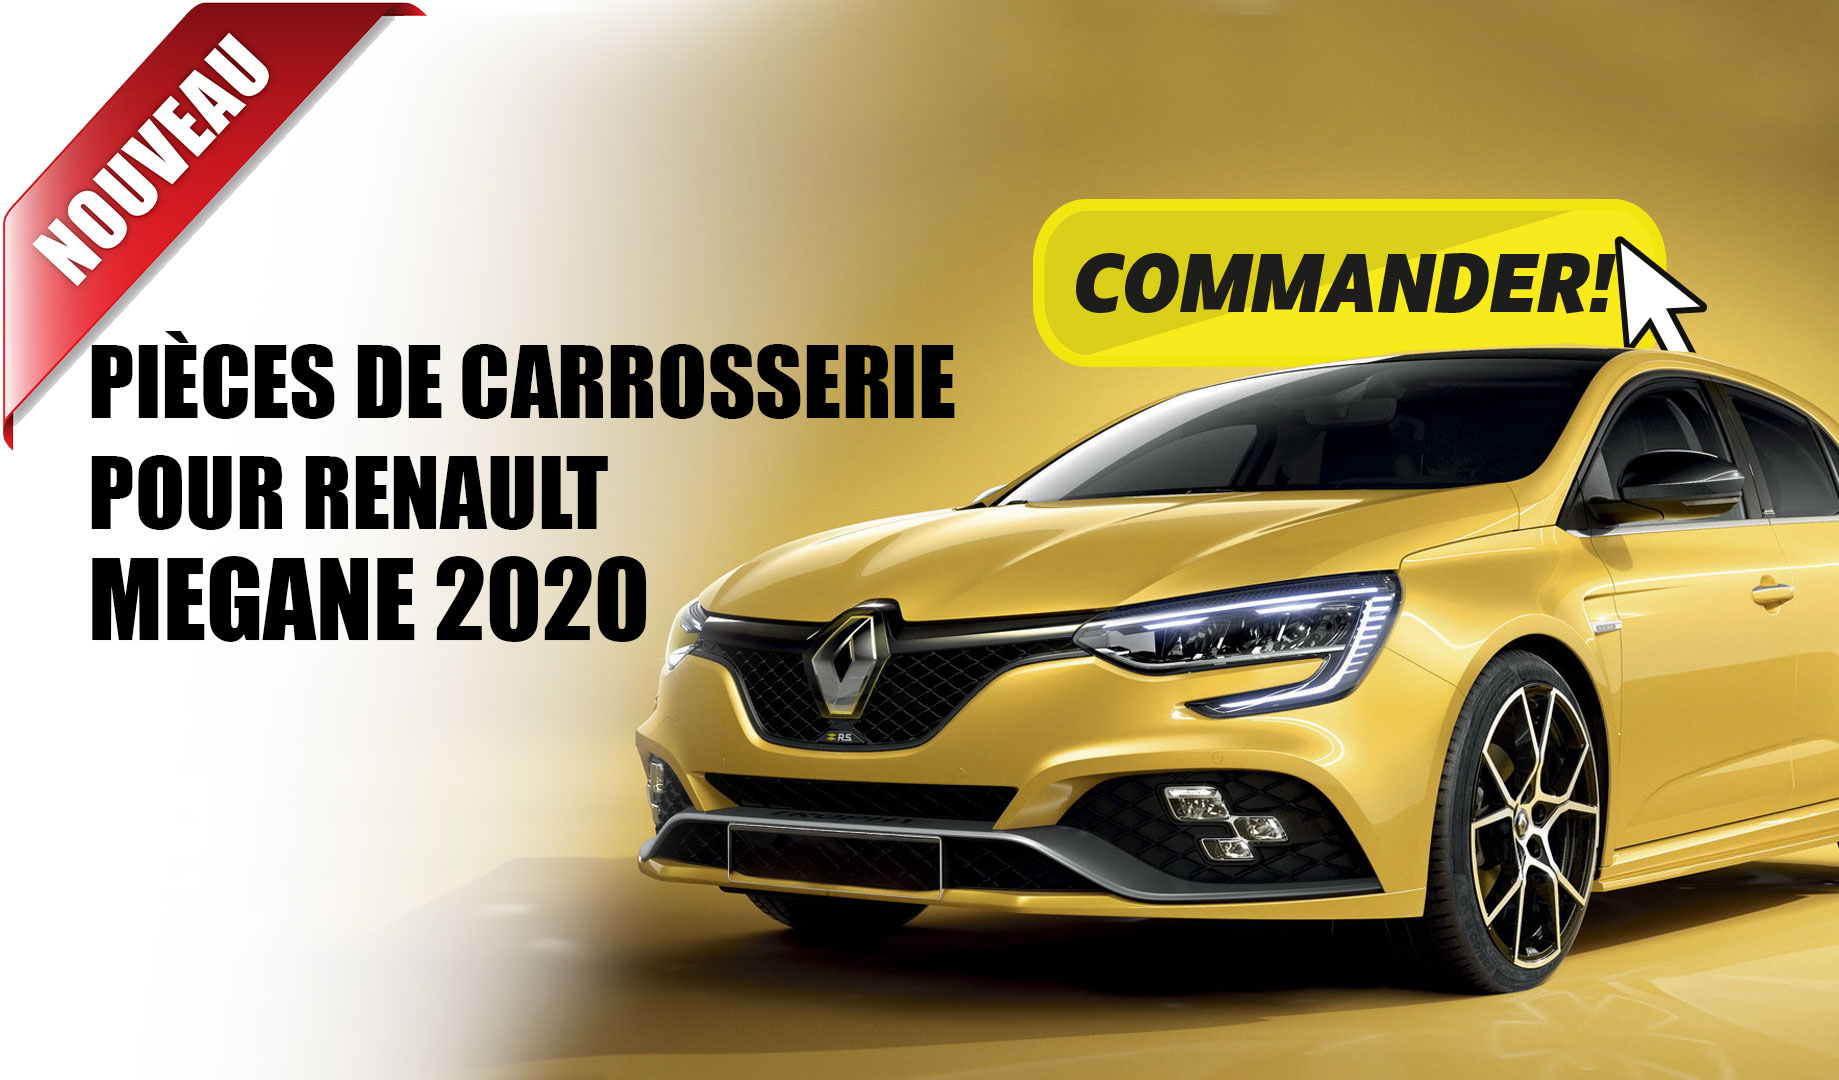 Pices de carrosserie Renault Megane 2020 